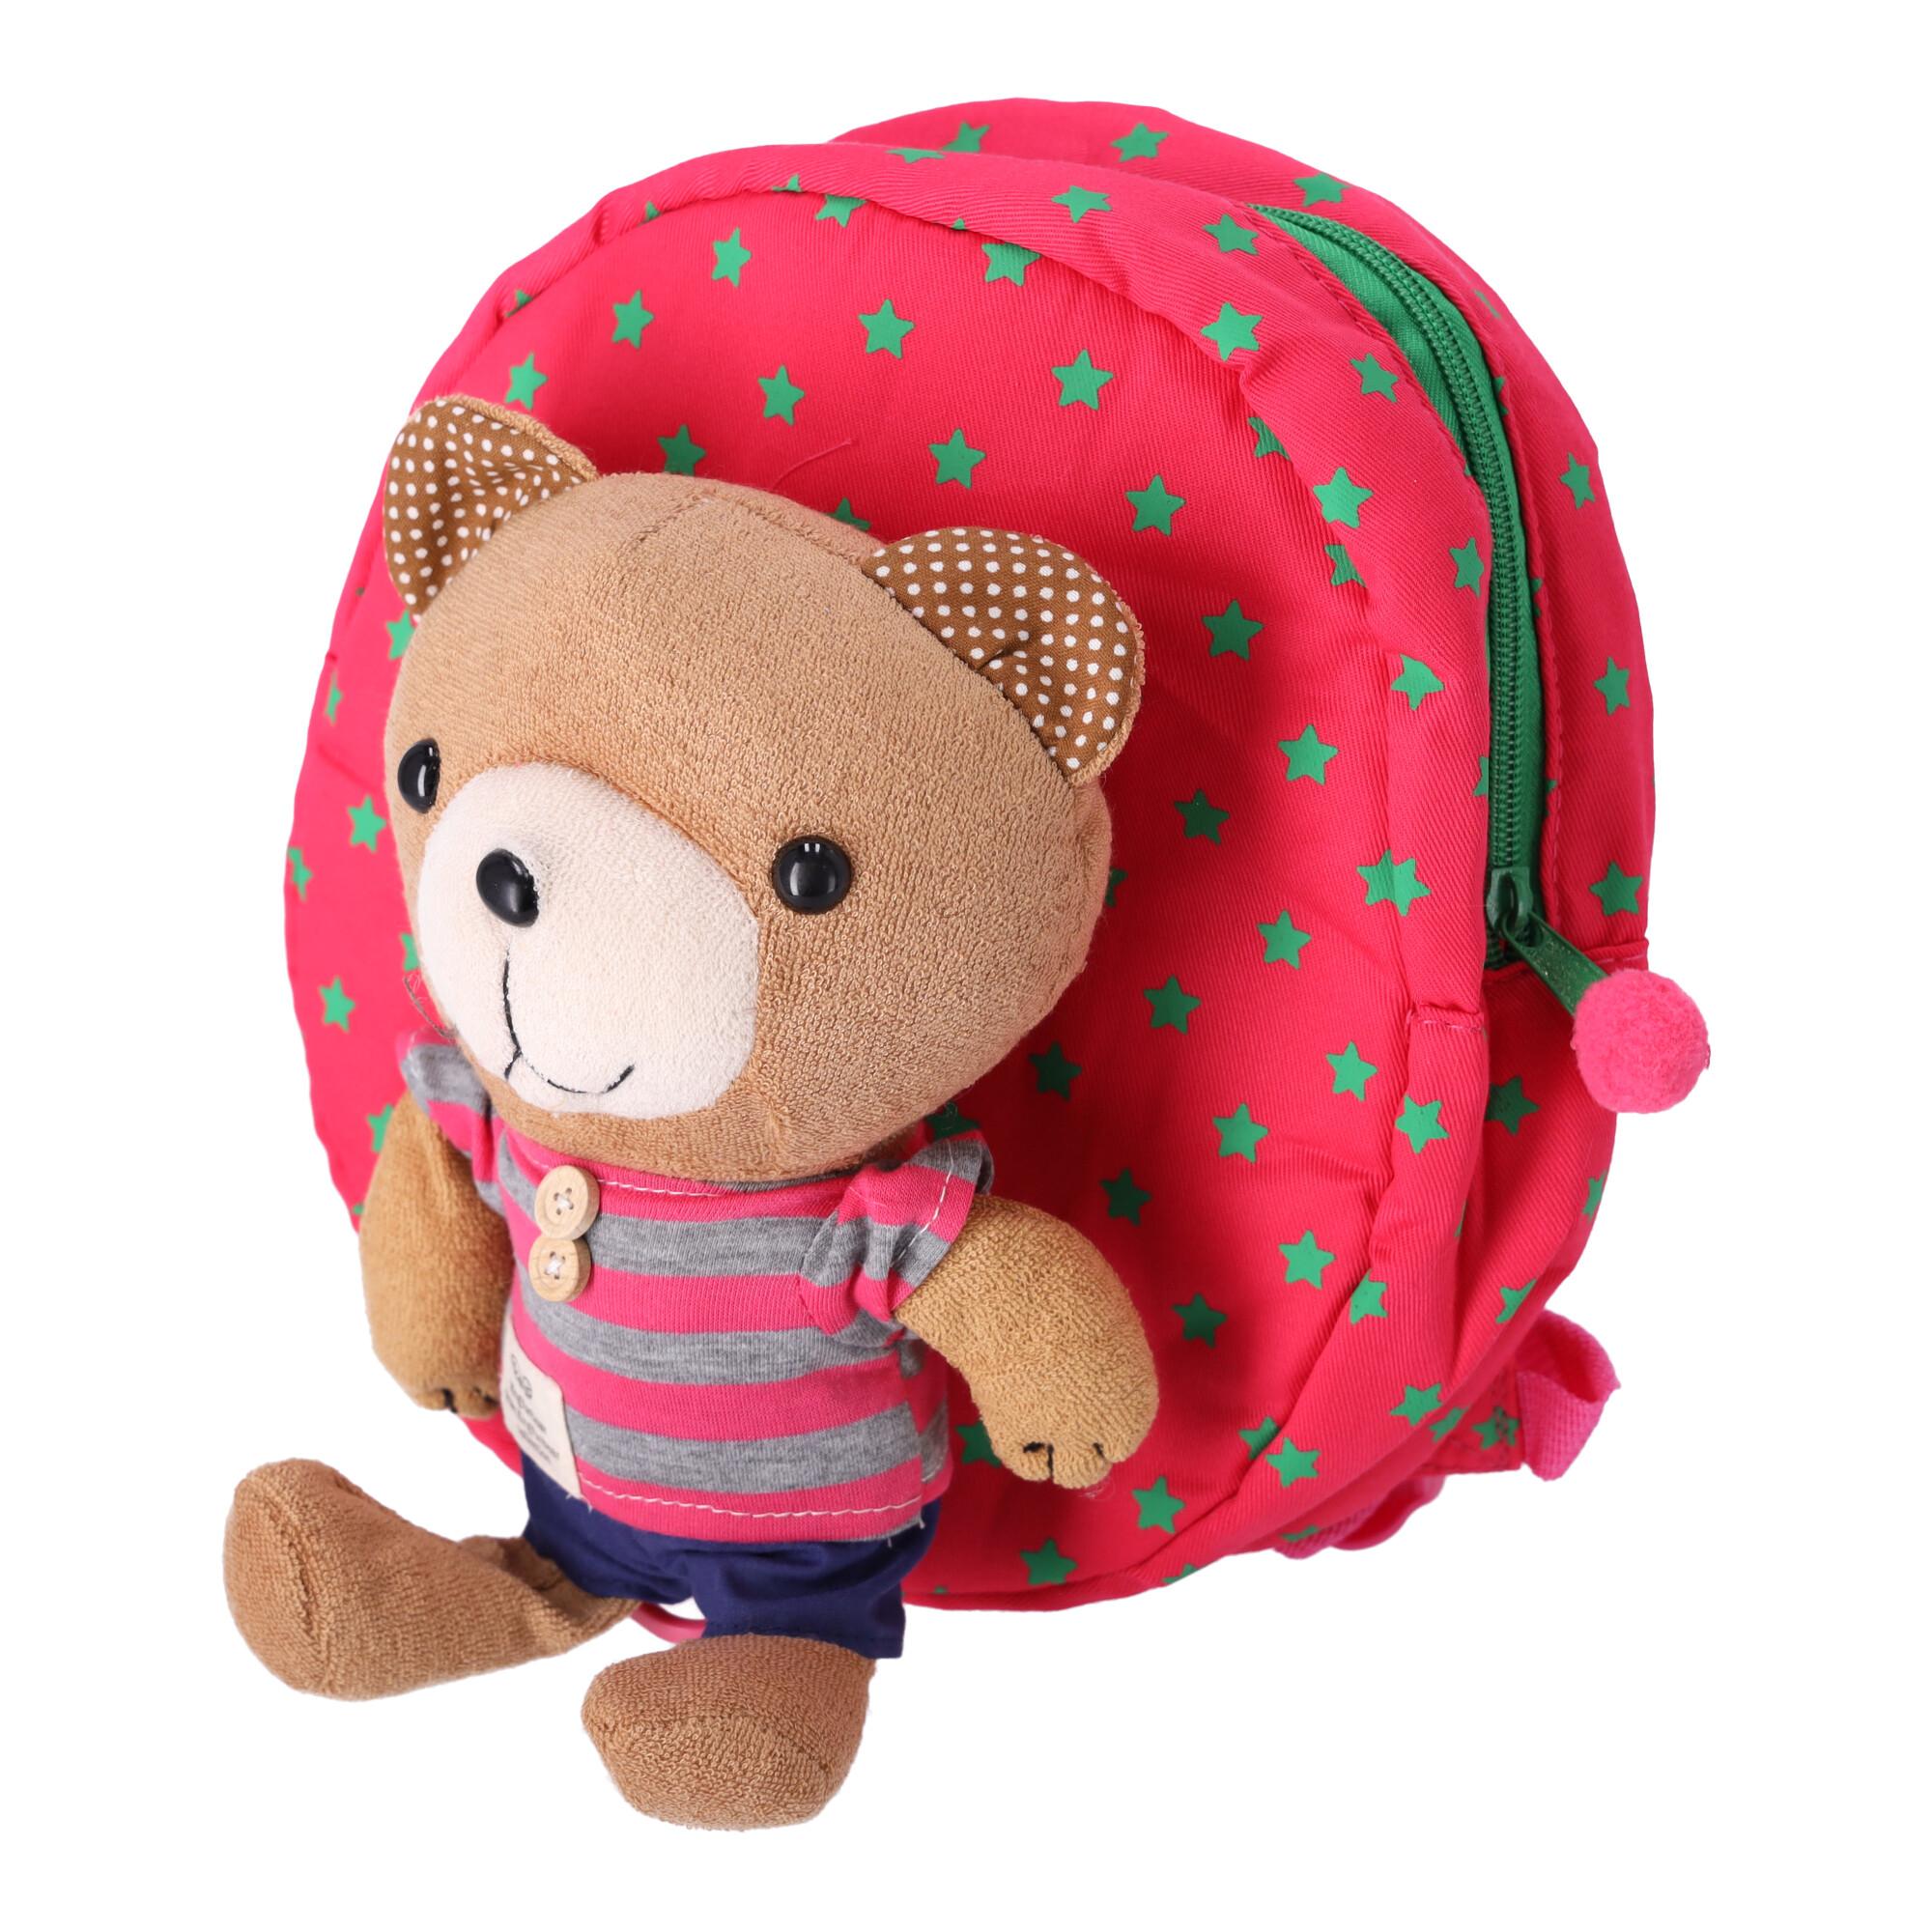 Plecak dla dziecka ze smyczą zabezpieczającą MIŚ -różowy typ 1